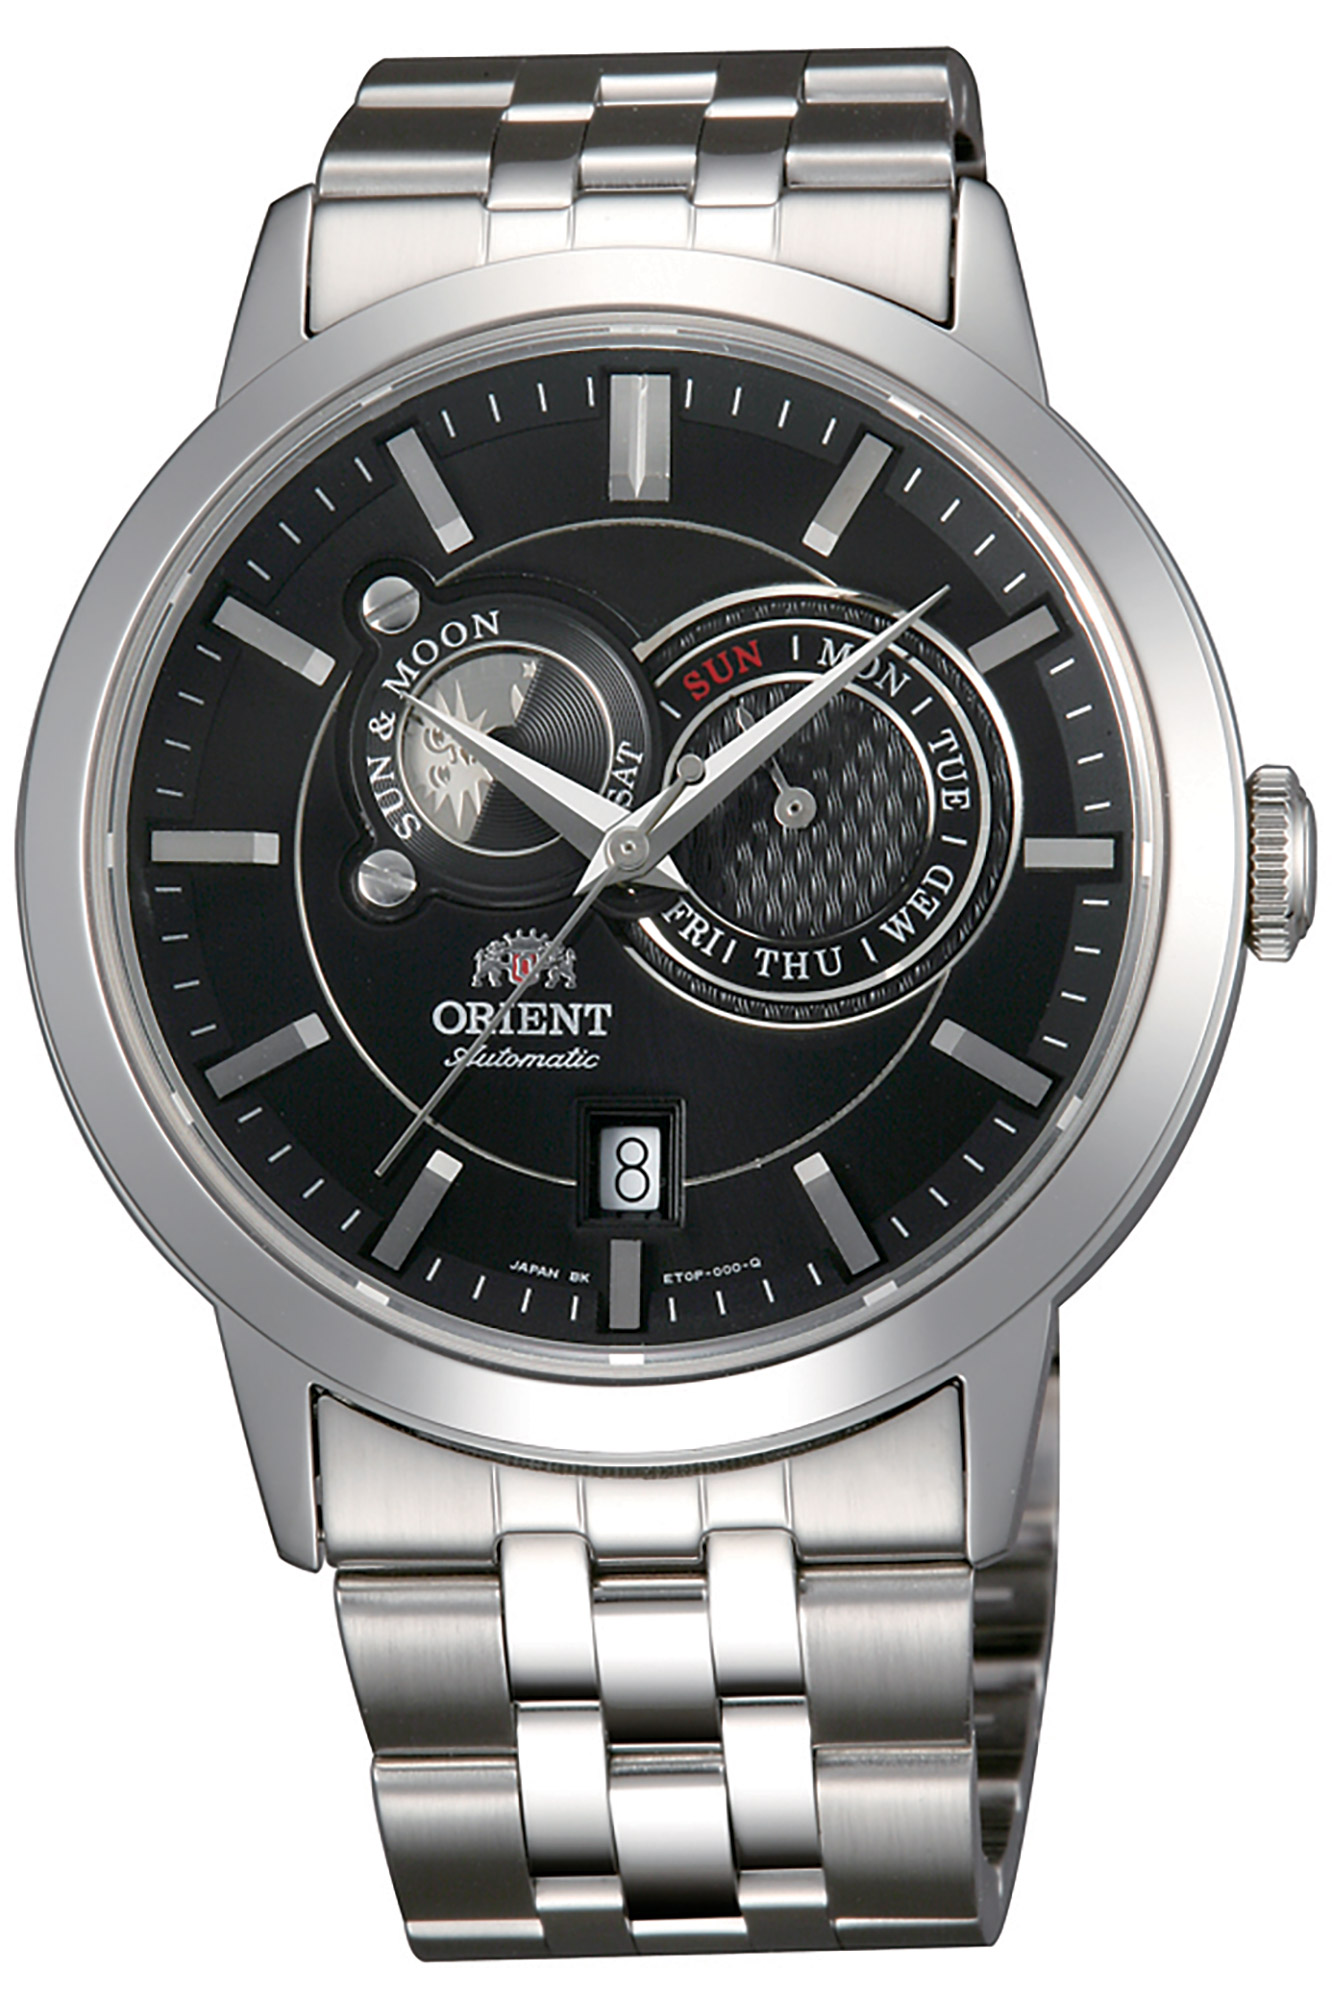 Купить часы ориент в спб. Orient et0p002b. Orient Automatic fet0p002b. Часы Orient et0p003b. Orient ra-ar0003l.